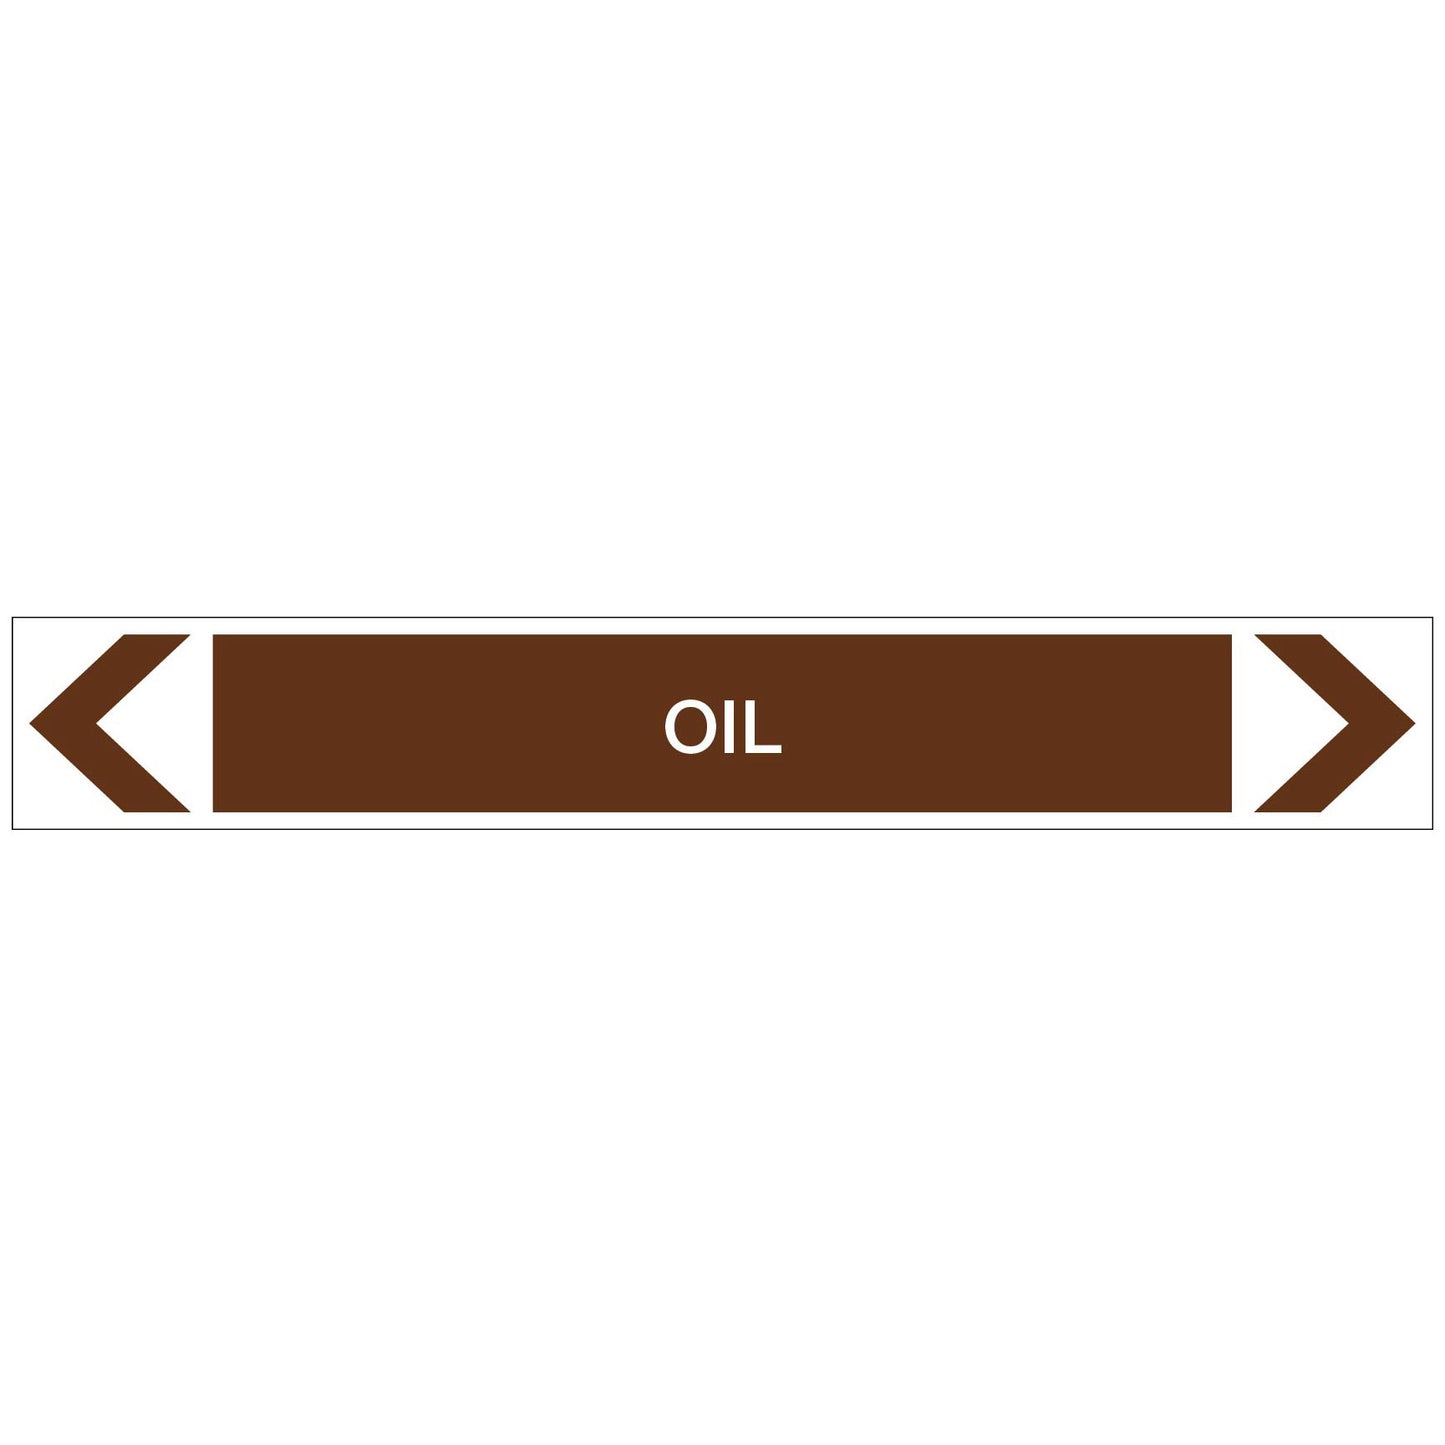 Oils - Oil - Pipe Marker Sticker